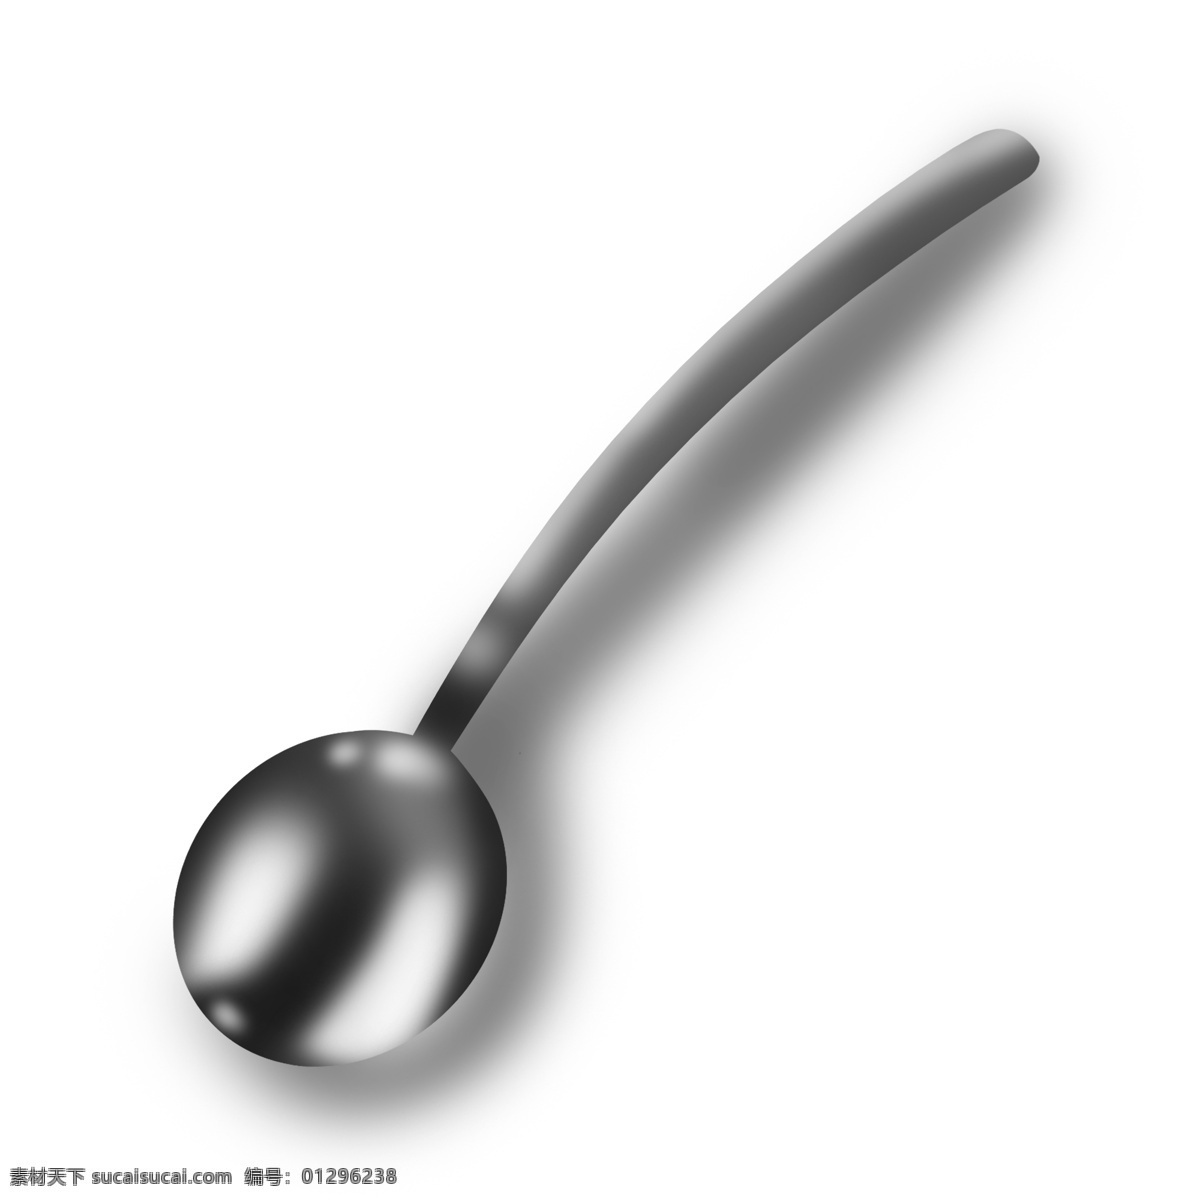 银白色 曲线 圆形 勺子 灰色 金属 银质感 银子 反光 吃饭 仿真 产品 实物 写实 精致 高光